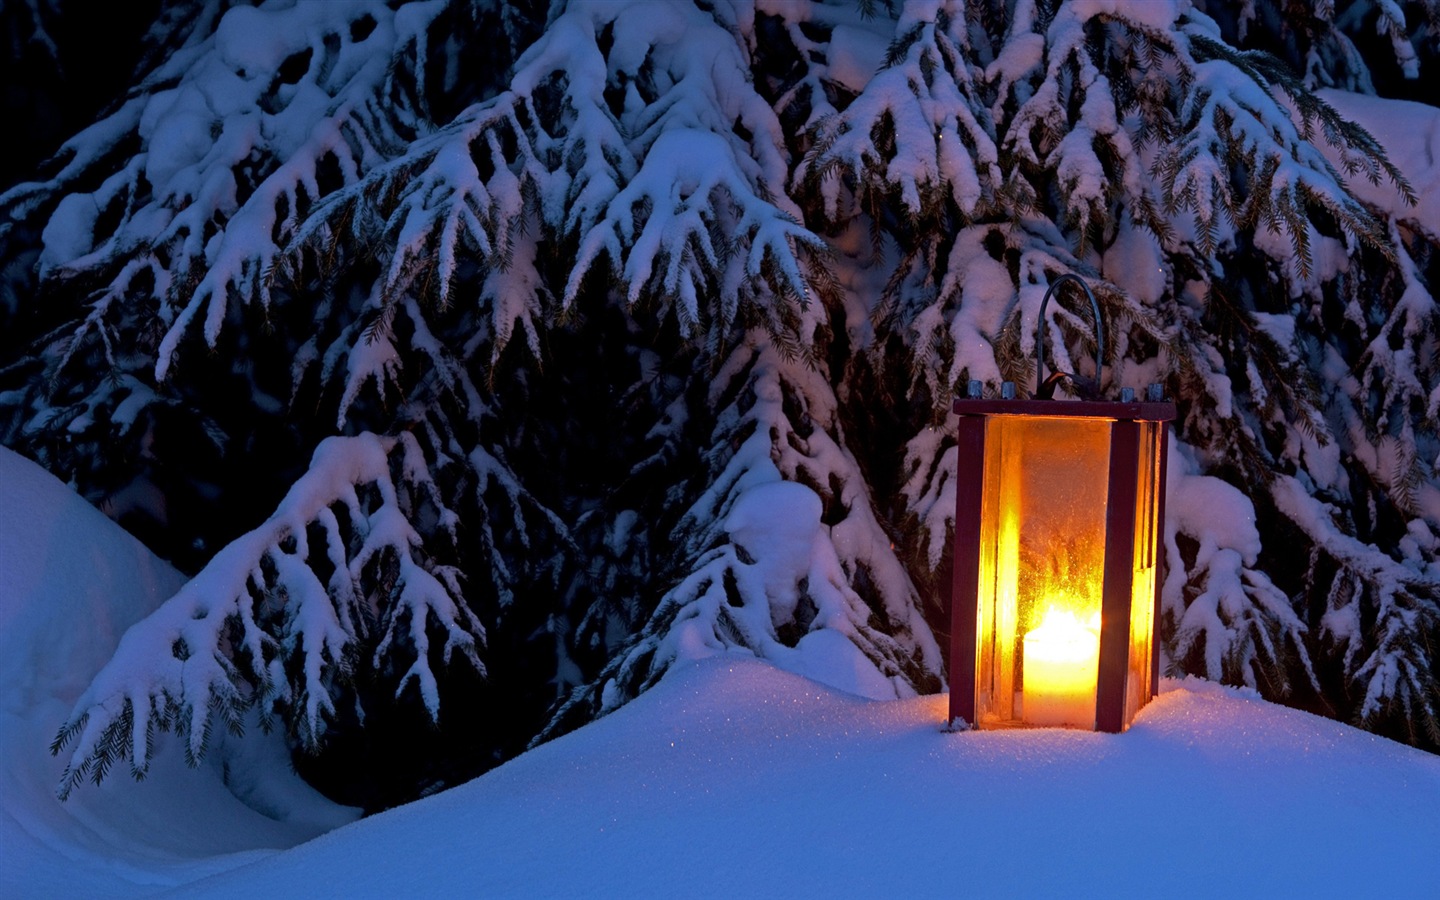 Windows 8 Theme HD Wallpapers: Nieve del invierno noche #2 - 1440x900